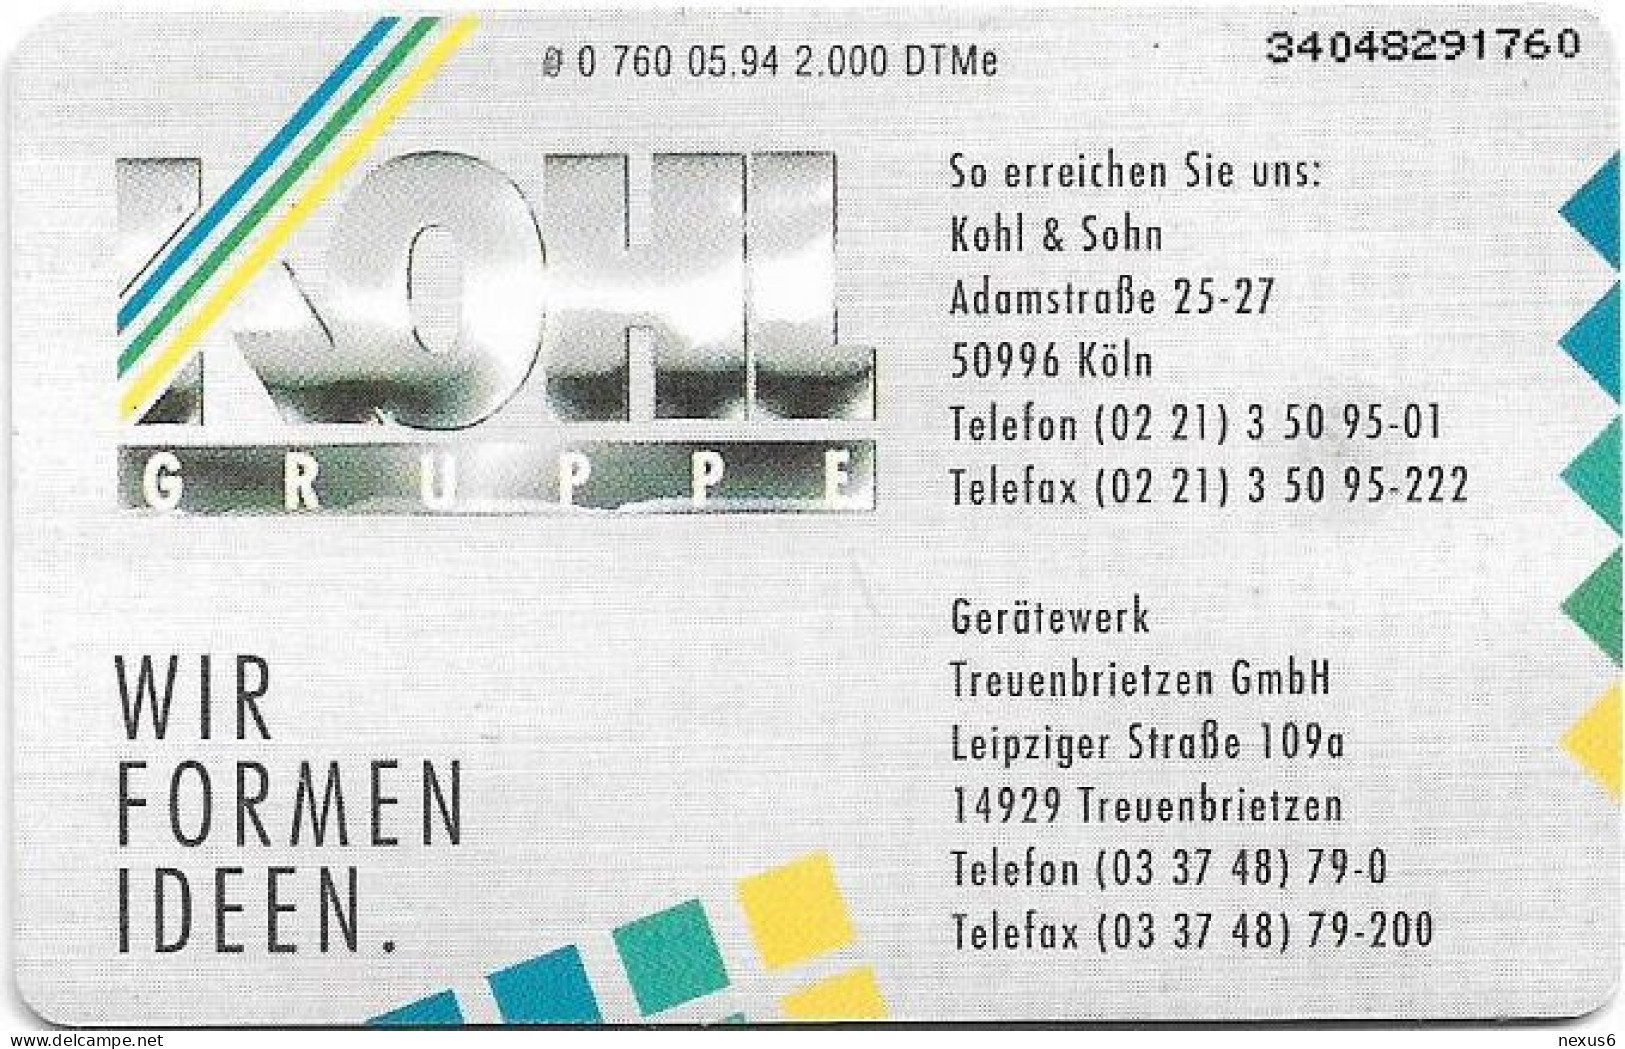 Germany - Kohl Gruppe - Eisenverarbeitung - O 0760 - 05.1994, 6DM, 2.000ex, Used - O-Series: Kundenserie Vom Sammlerservice Ausgeschlossen